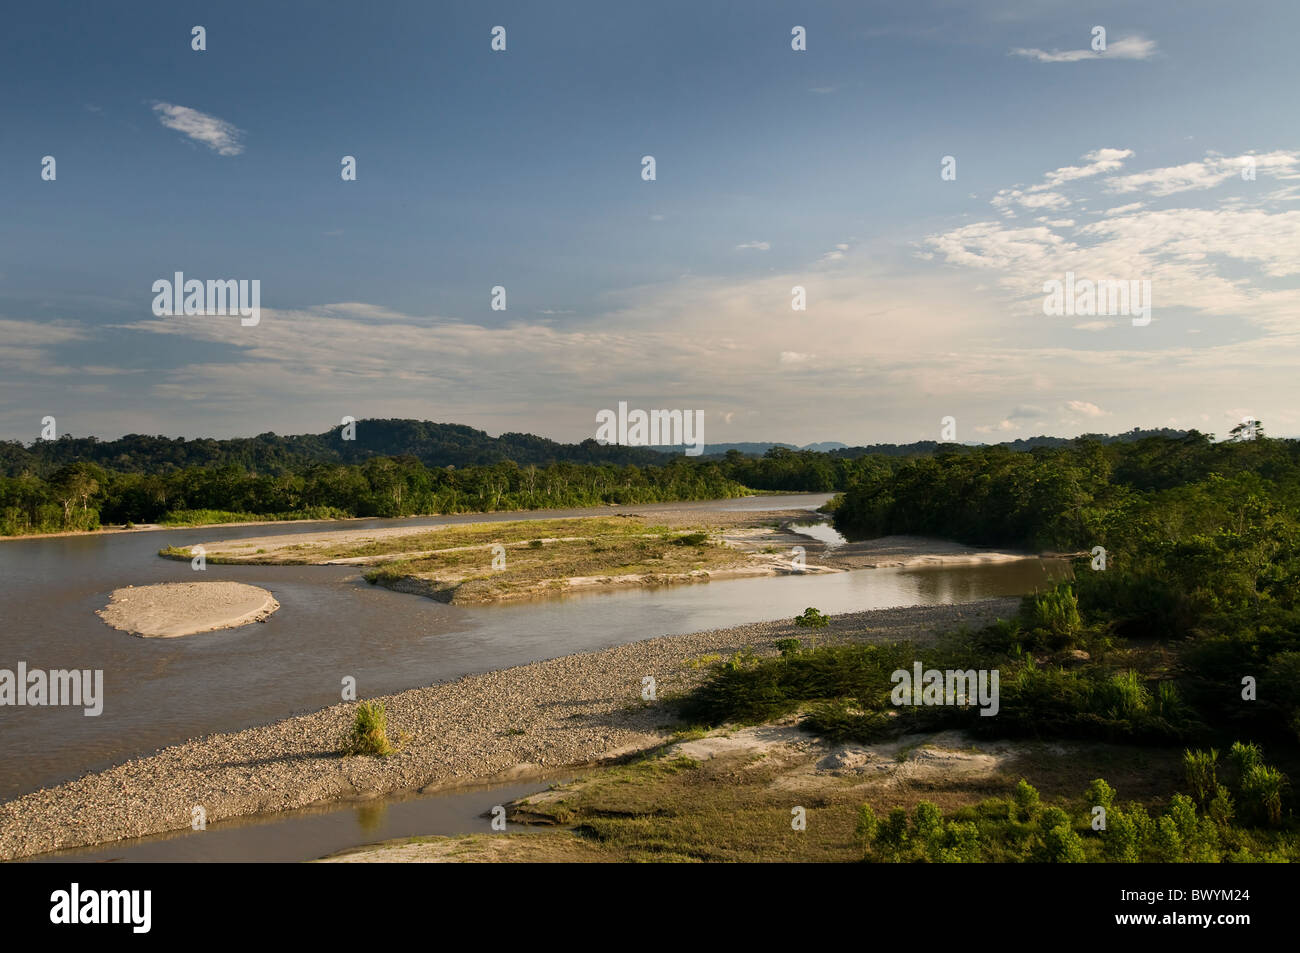 Beautiful landscape of Napo river in Ecuador's Amazon basin Stock Photo